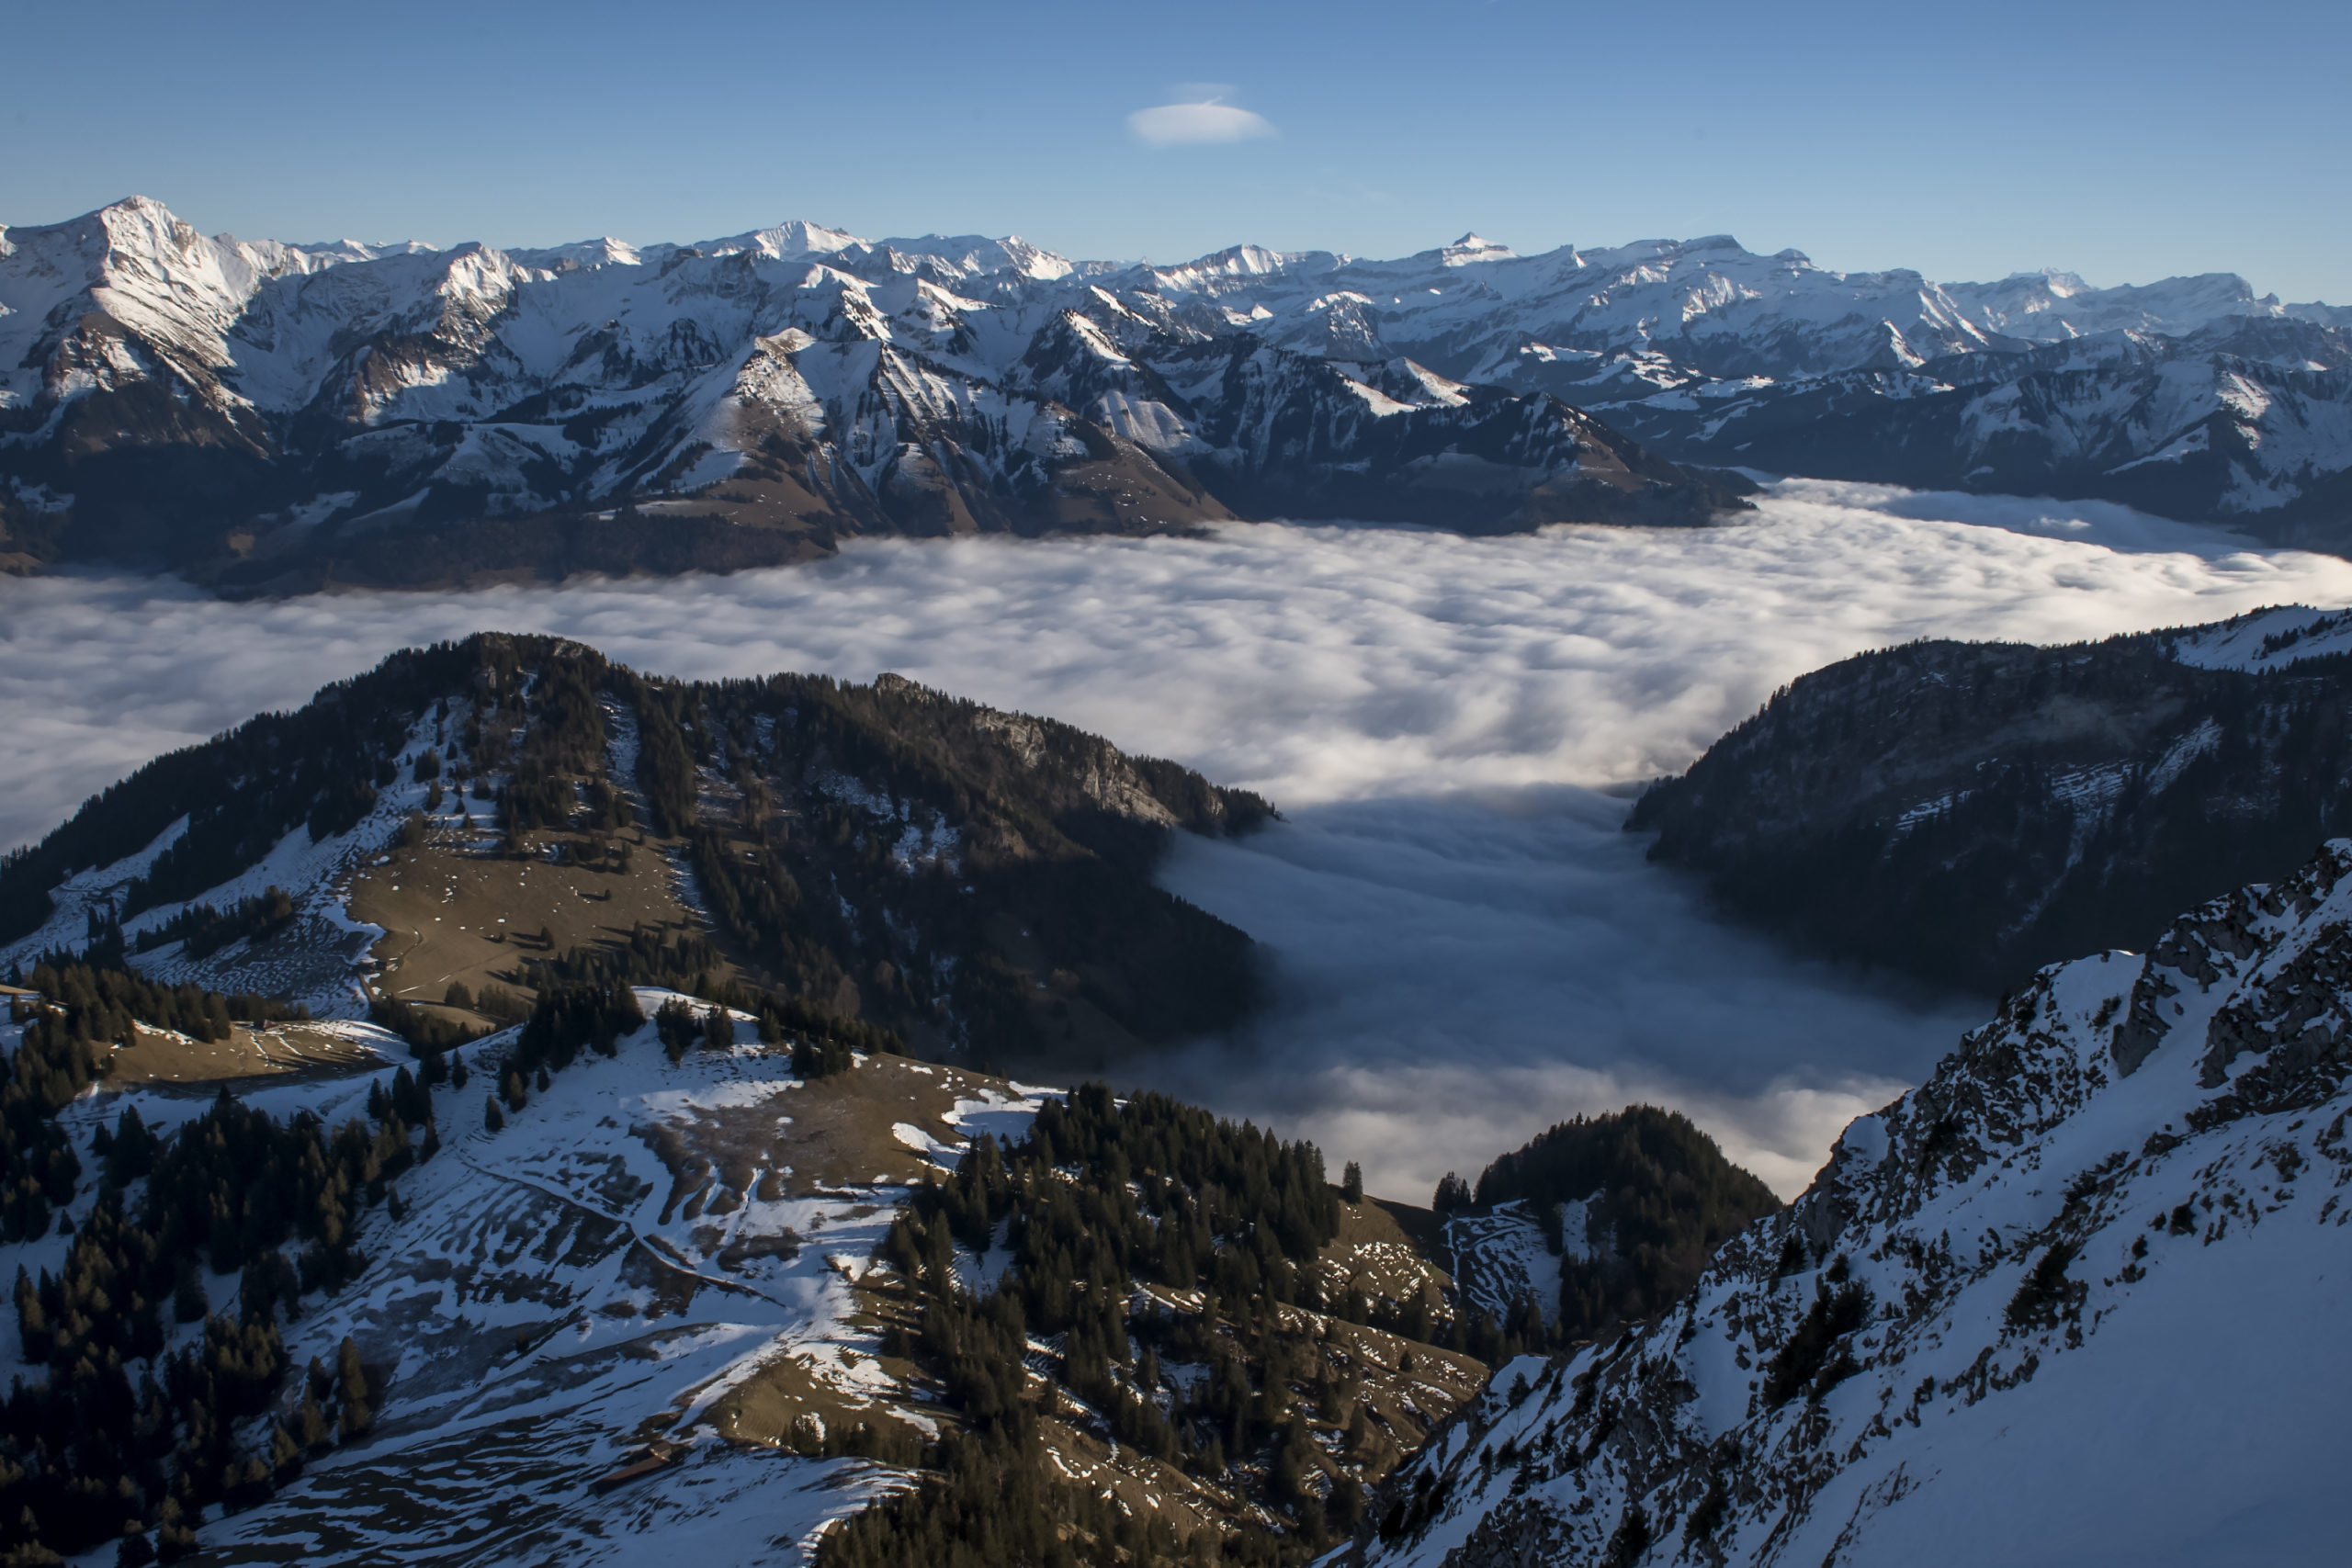 Moleson,01 01. 2019. Premier jour de l annee, Mer de brouillard sur le plateau suisse vue depuis le Moleson ( 2000 m.) en Gruyere.  Au fond les sommets des alpes vaudoises et valaisannes
Photo  Jean-Guy Python